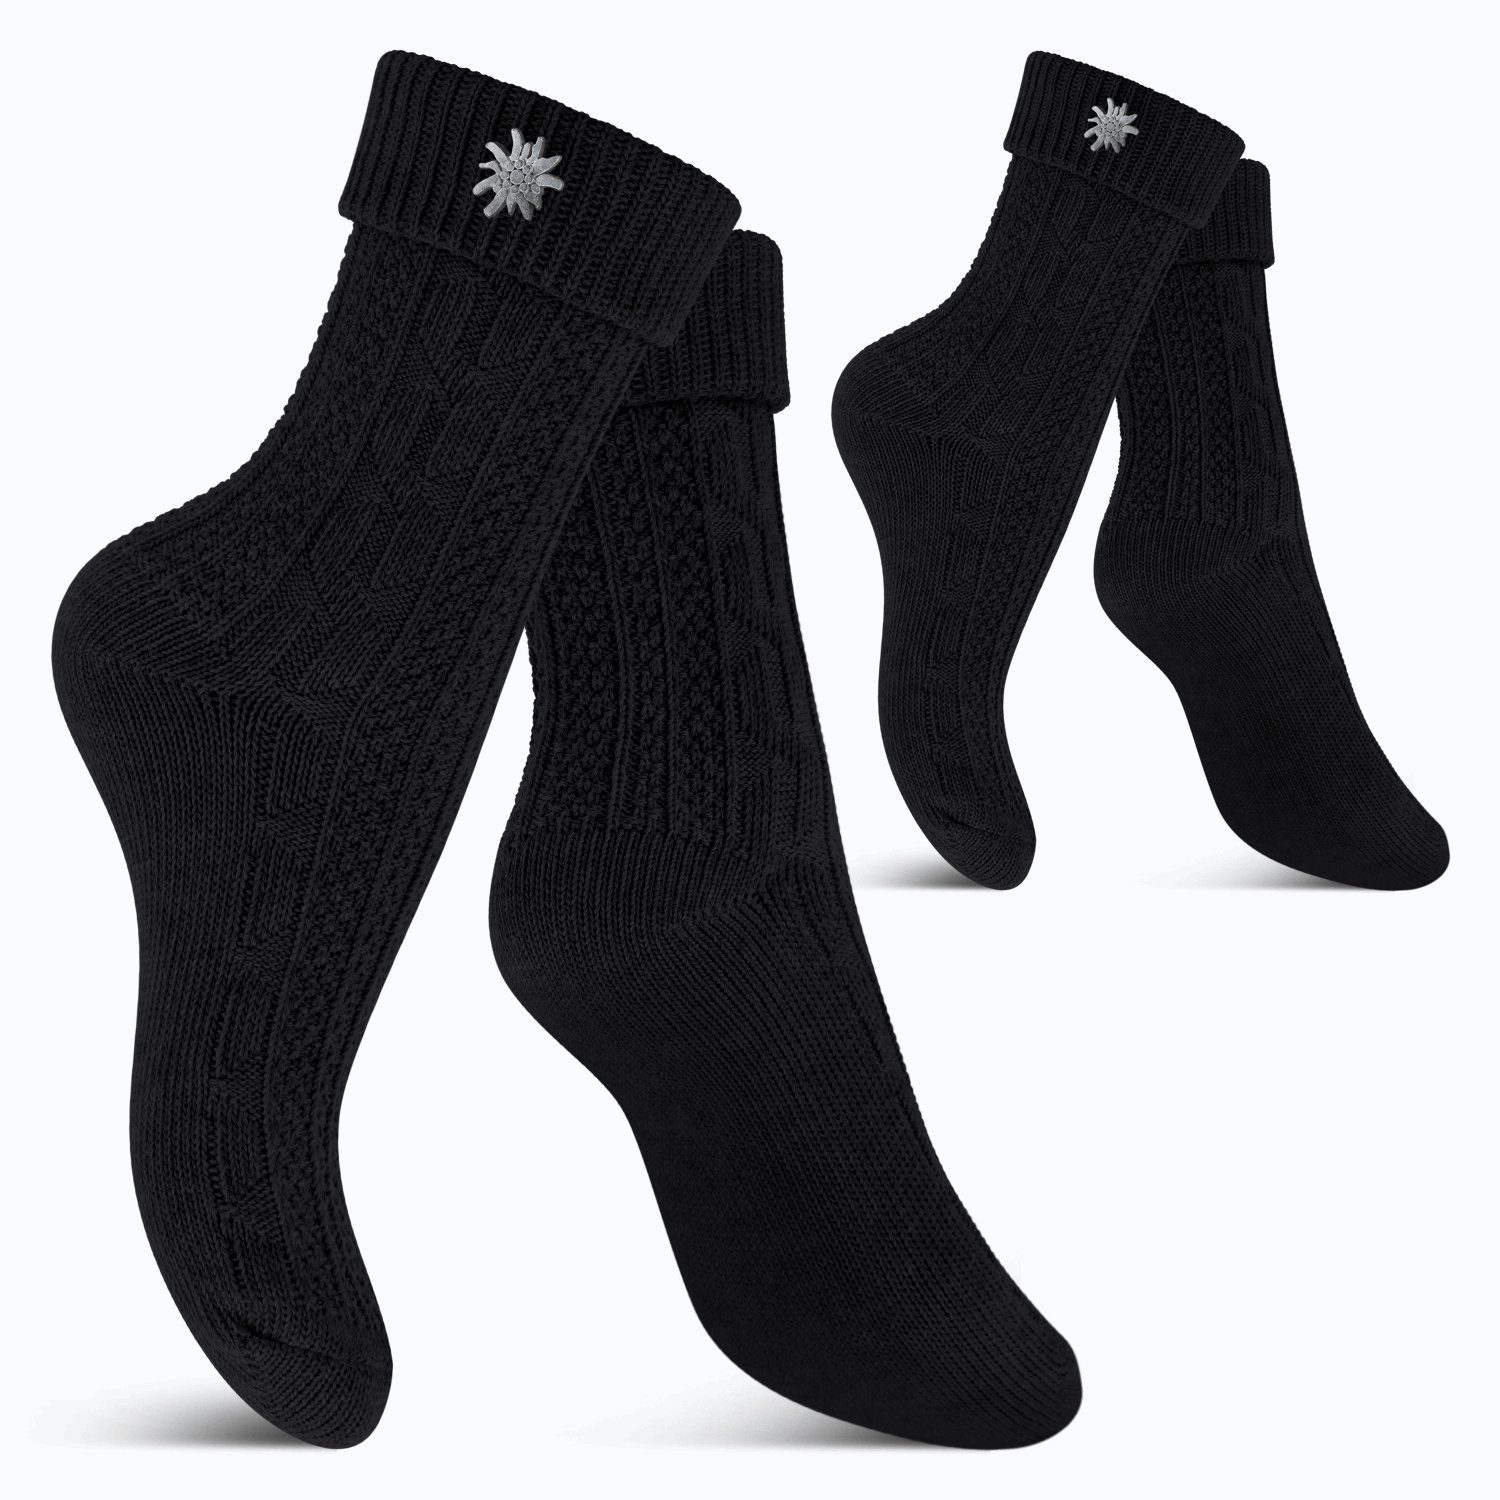 celodoro Trachtensocken Trachten Socken (2 Paar) mit Edelweiß-Pin für Damen & Herren Schwarz